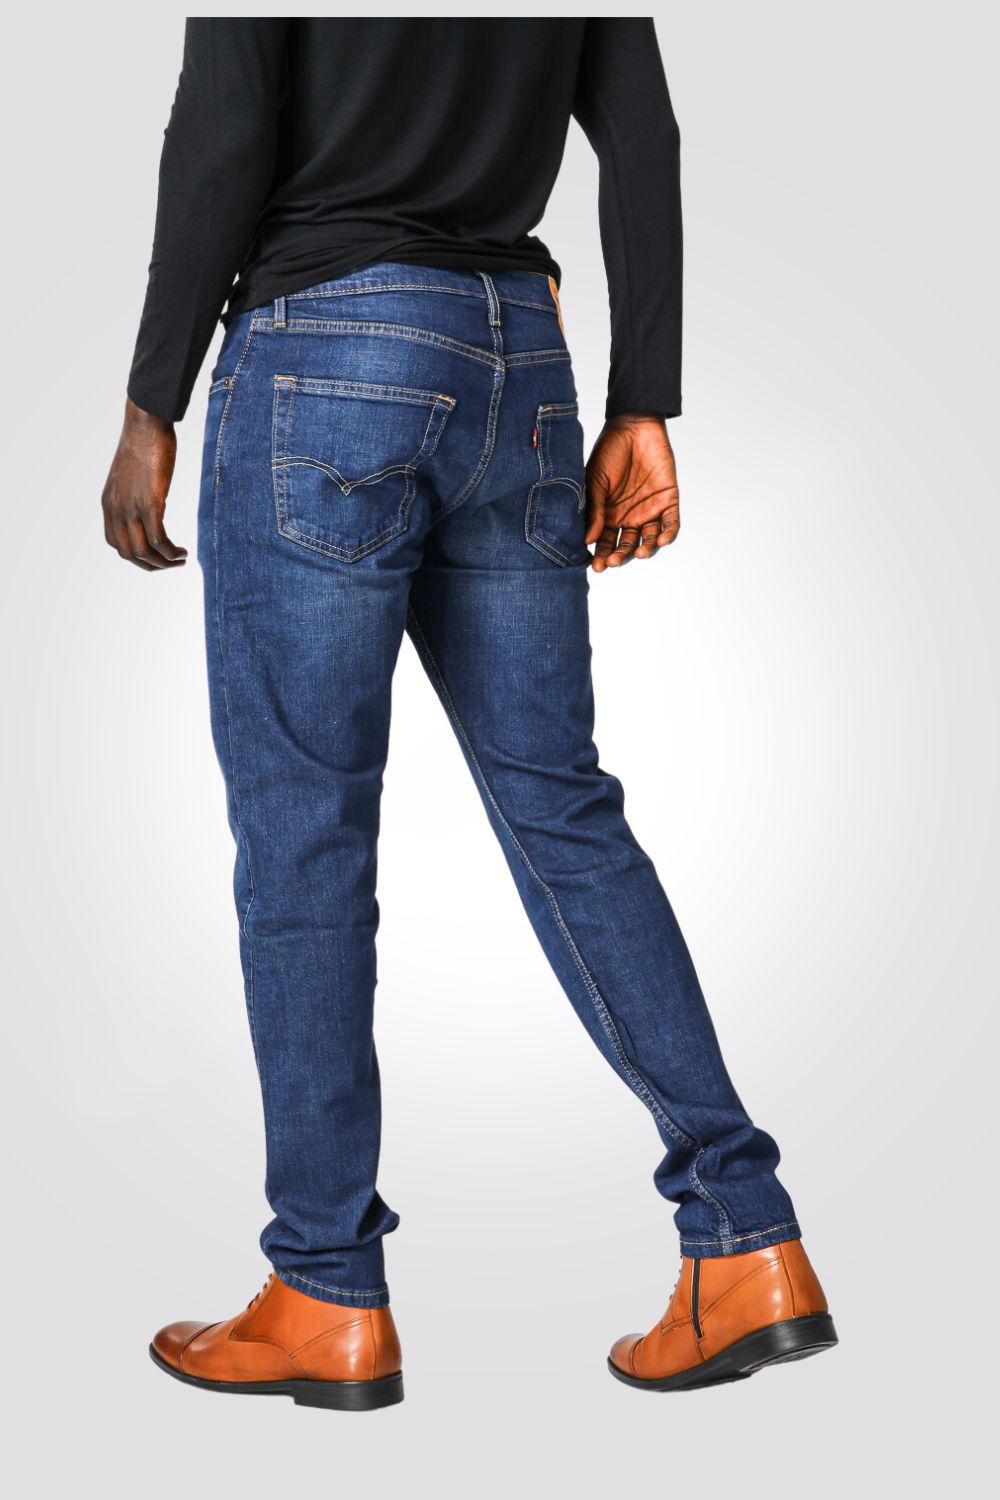 ג'ינס לגברים INDIGO-POCKETS בצבע כחול בהיר